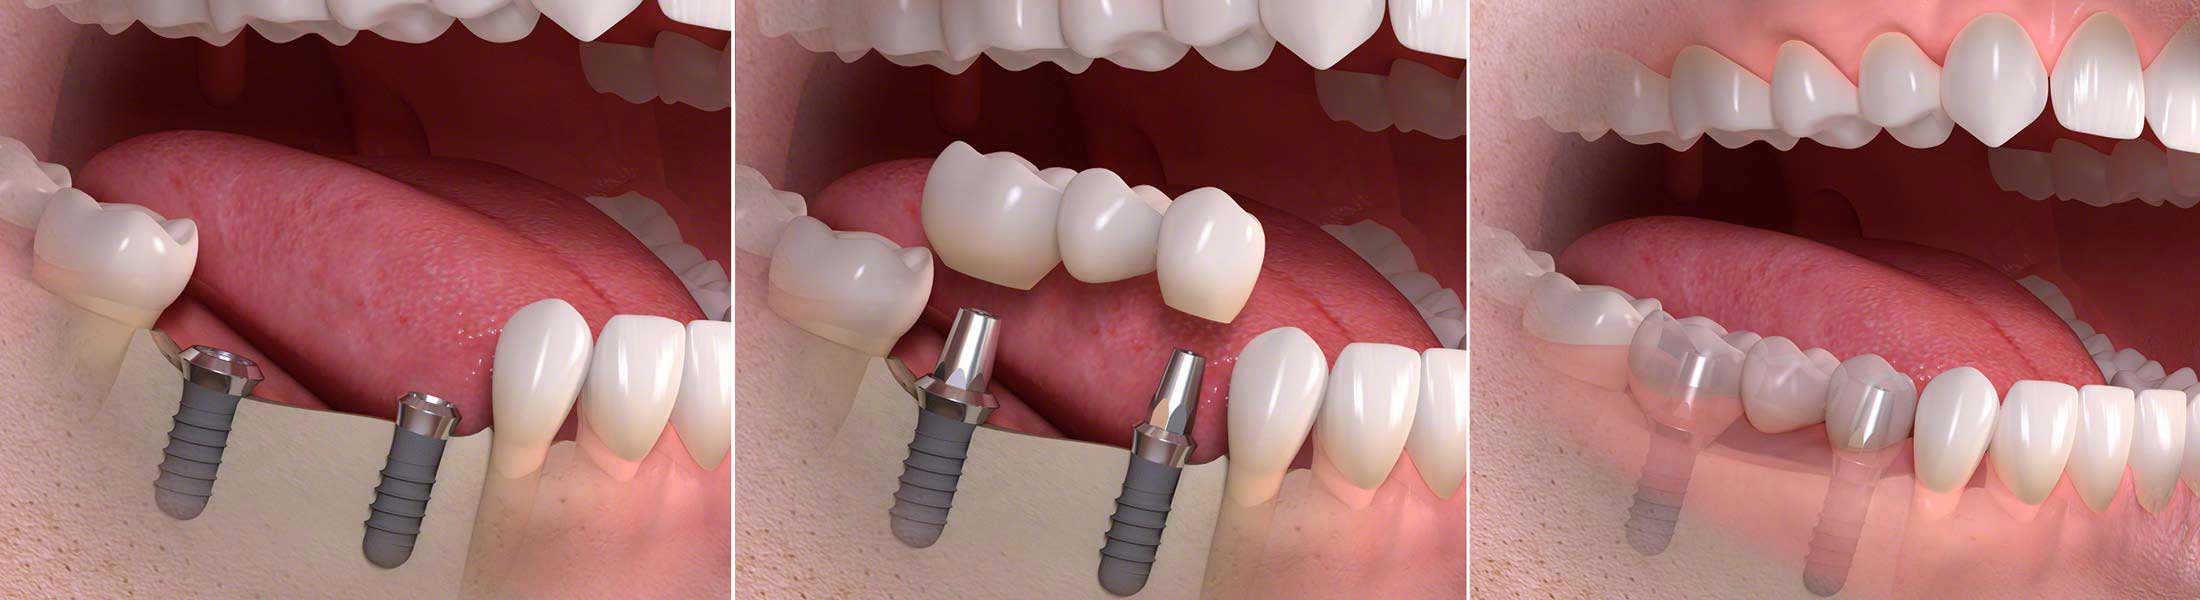 Mehrere Zähne durch Implantate ersetzt